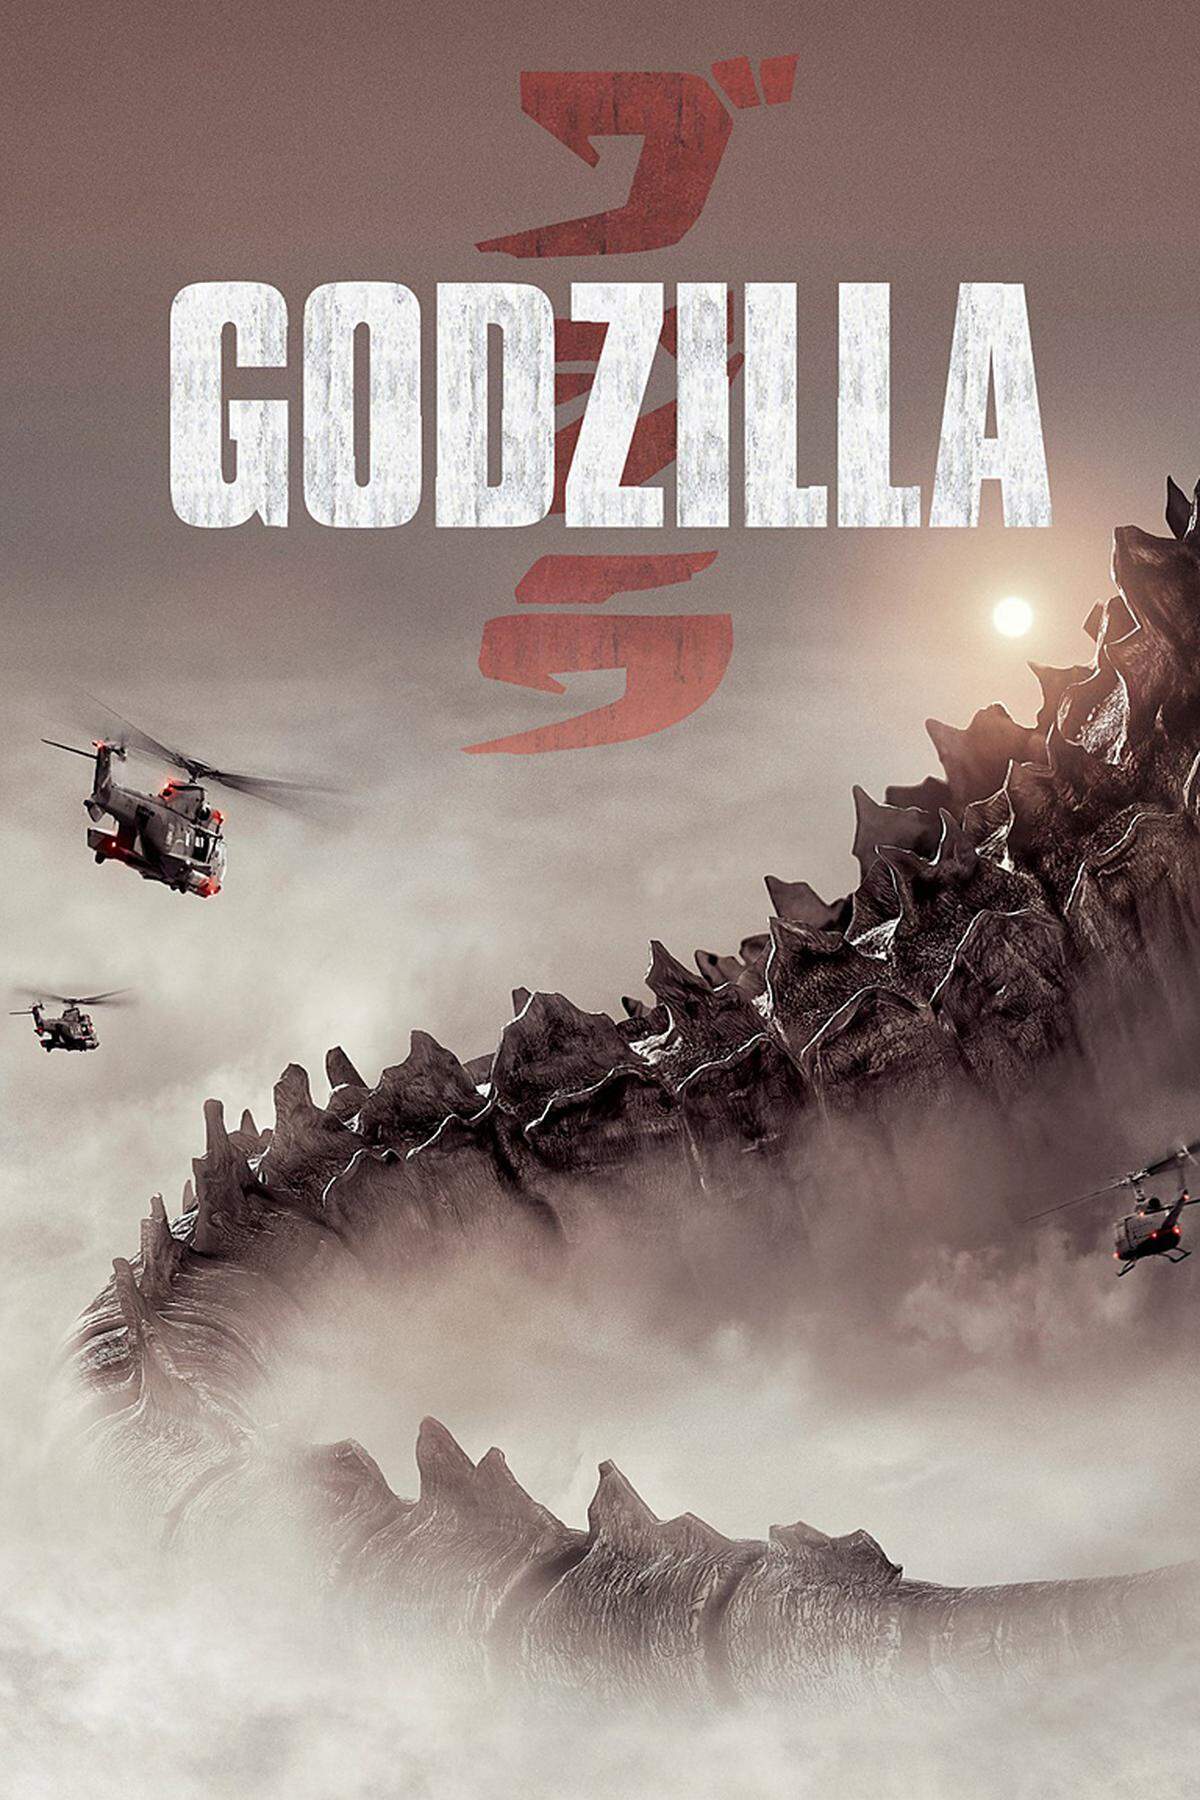 Der Trailer für die "Godzilla"-Neuverfilmung lässt Geek-Herzen höher schlagen. Frank Darabont (Ex-Produzent von "The Walking Dead") war am Drehbuch mitbeteiligt. In den Hauptrollen: Aaron Taylor-Johnson ("Kick-Ass"), Juliette Binoche und Bryan Cranston. Ein Untergang, auf den man sich freuen kann.